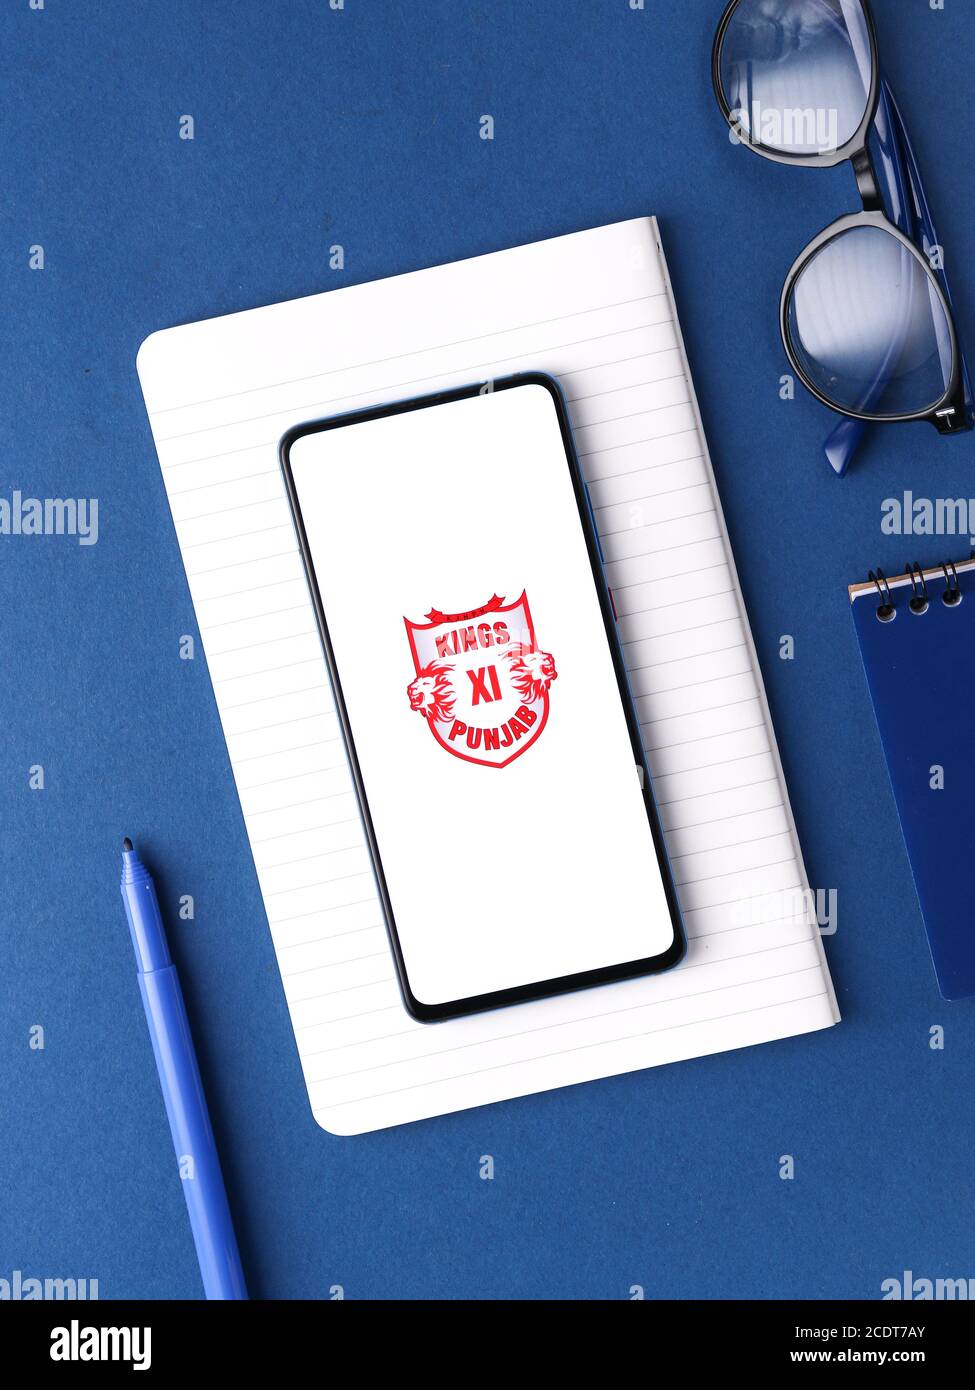 Assam, inde - 27 août 2020 : logo Kings XI punjab sur l'écran du téléphone. Banque D'Images